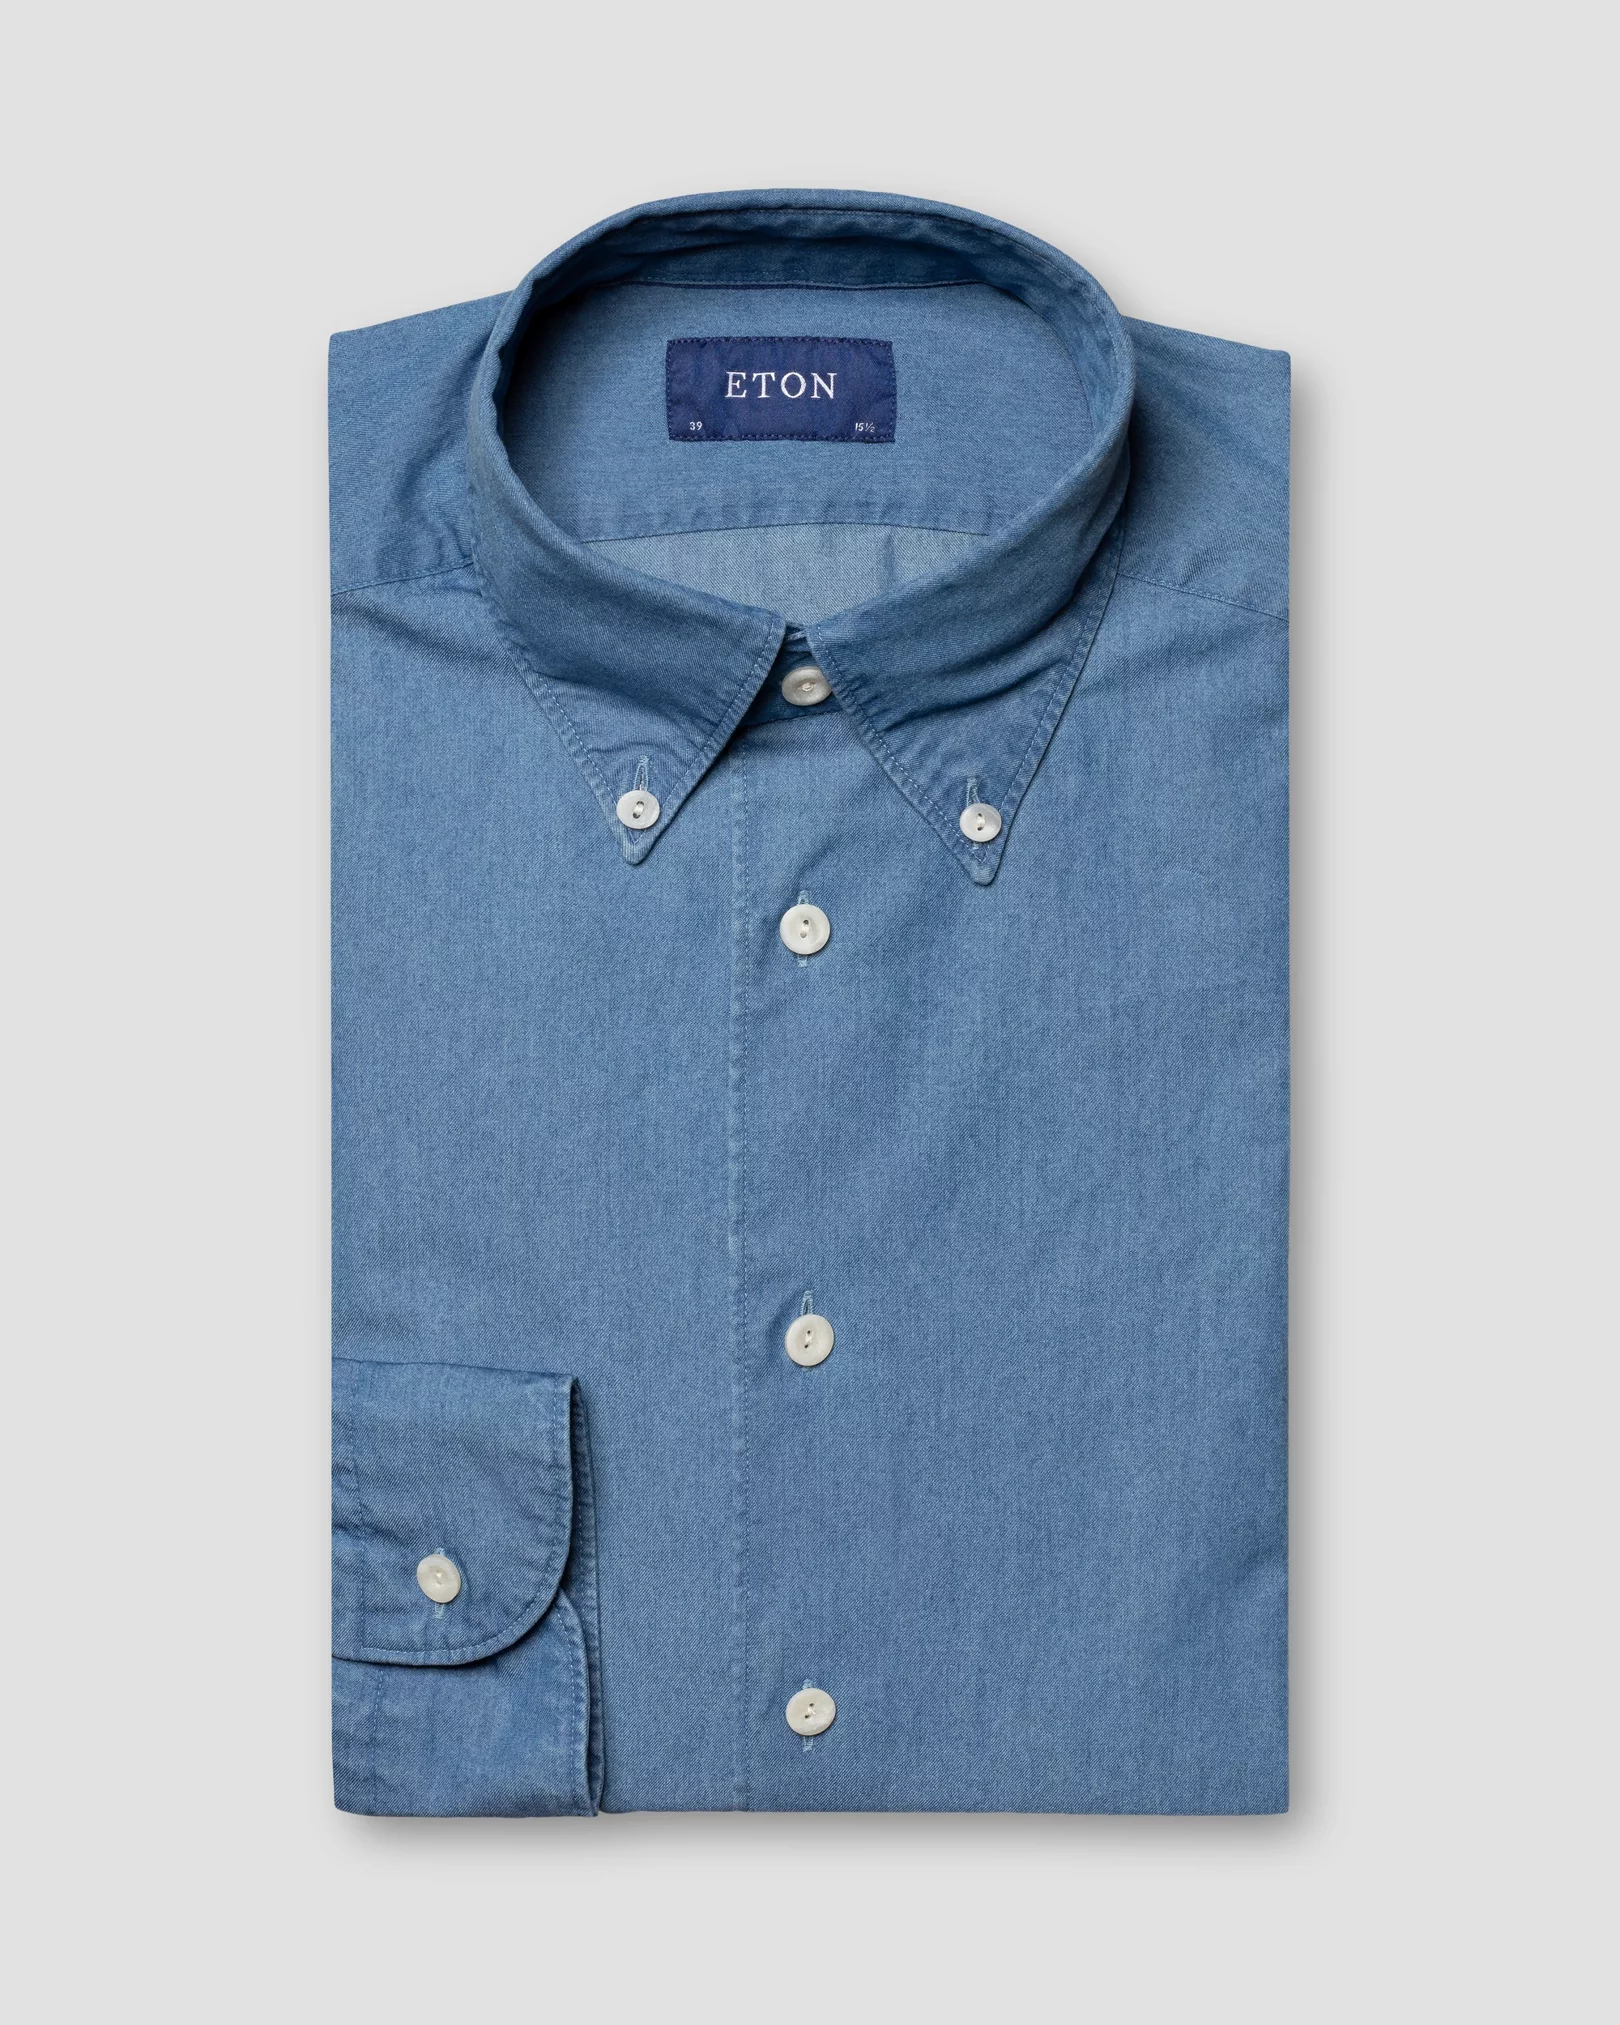 Eton - dark blue indigo button down wardrobe essentials